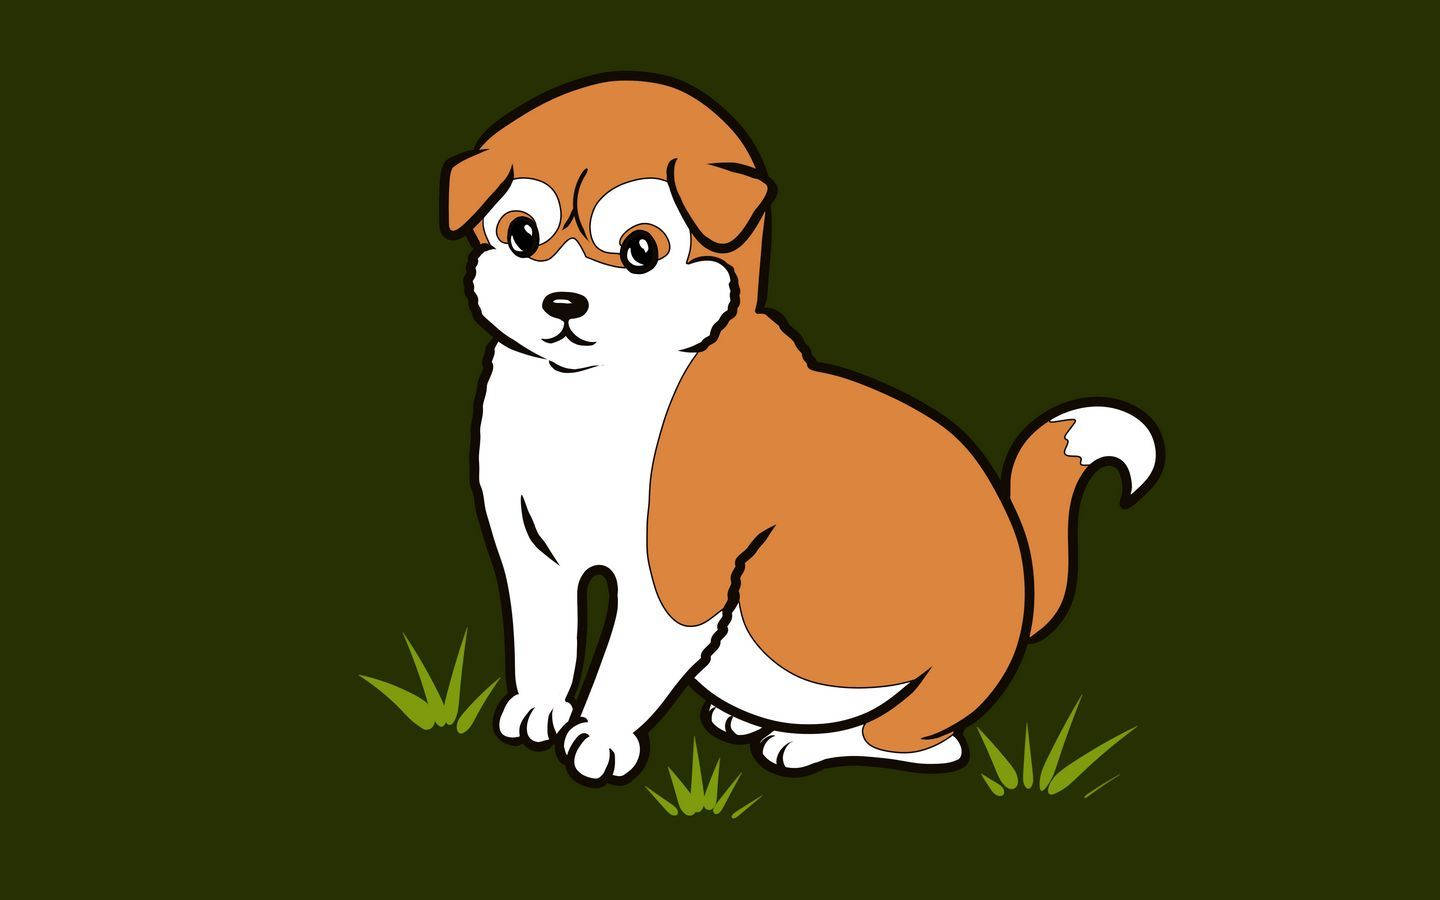 эстетичный минималистский мультфильм о собаке